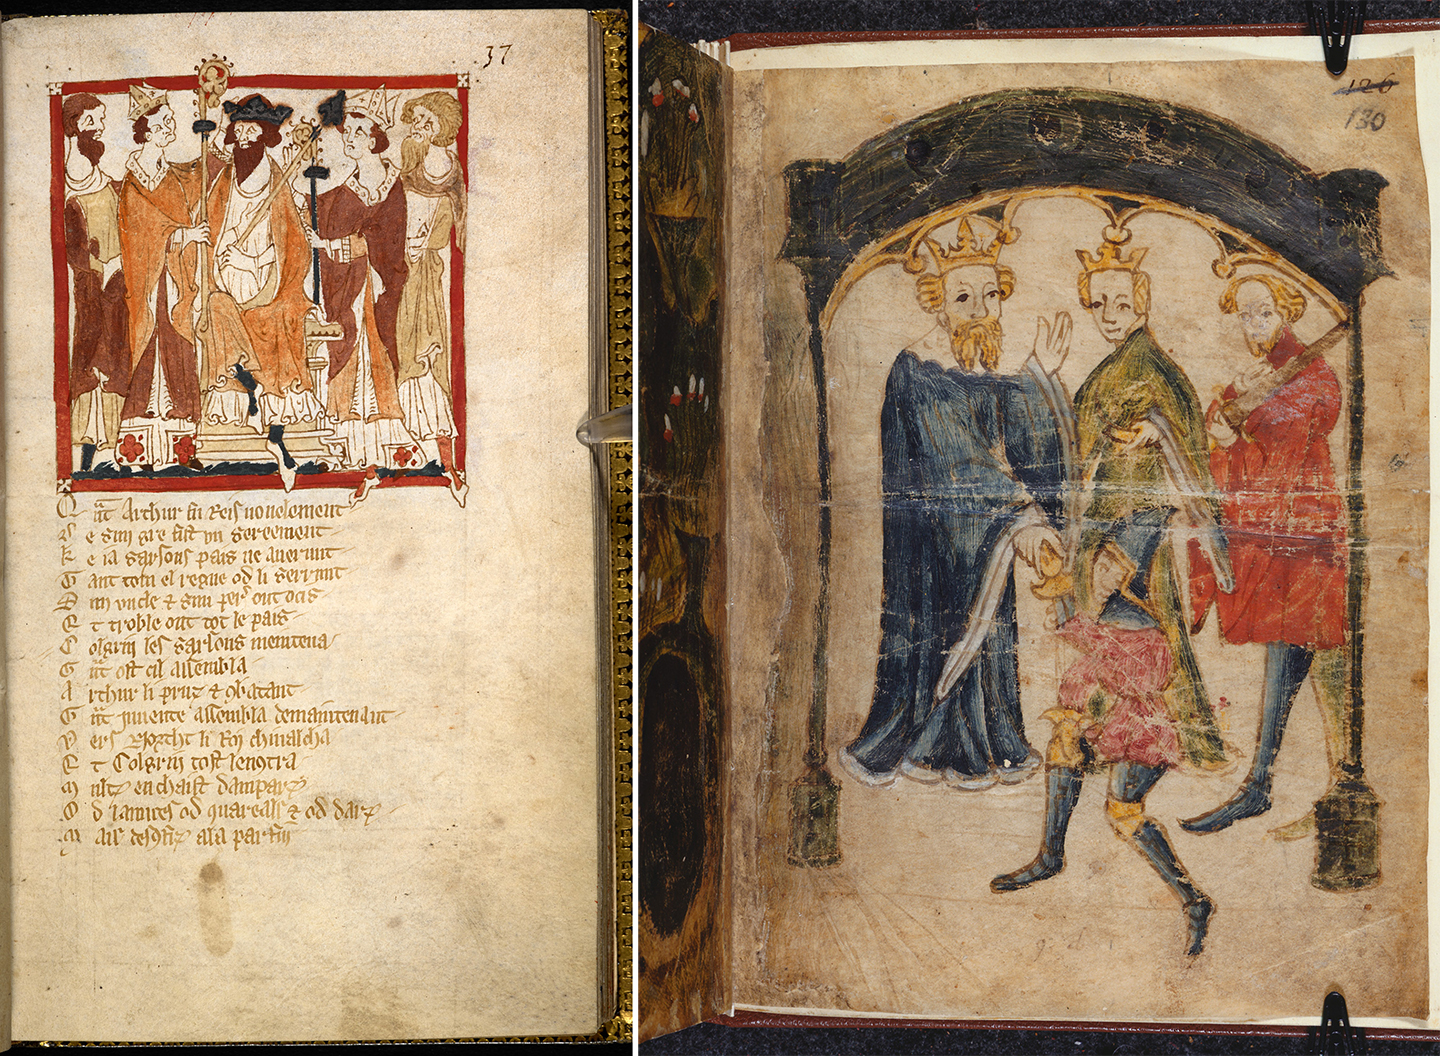 (Trái) Lễ đăng quang của Vua Arthur trong tác phẩm “Roman de Brut” (Lịch Sử Nước Anh”) của nhà thơ Wace, thế kỷ 14. (Phải) Ngài Gawain trở về cung điện trong thi phẩm “Sir Gawain and the Green Knight” (Hiệp Sỹ Gawain và Lục Hiệp Sỹ), một trong bốn bài thơ ẩn danh trong bản thảo Gawain. Thư viện Anh quốc, London. (Ảnh: Hội đồng Thư viện Anh quốc/CC BY 4.0 DEED).